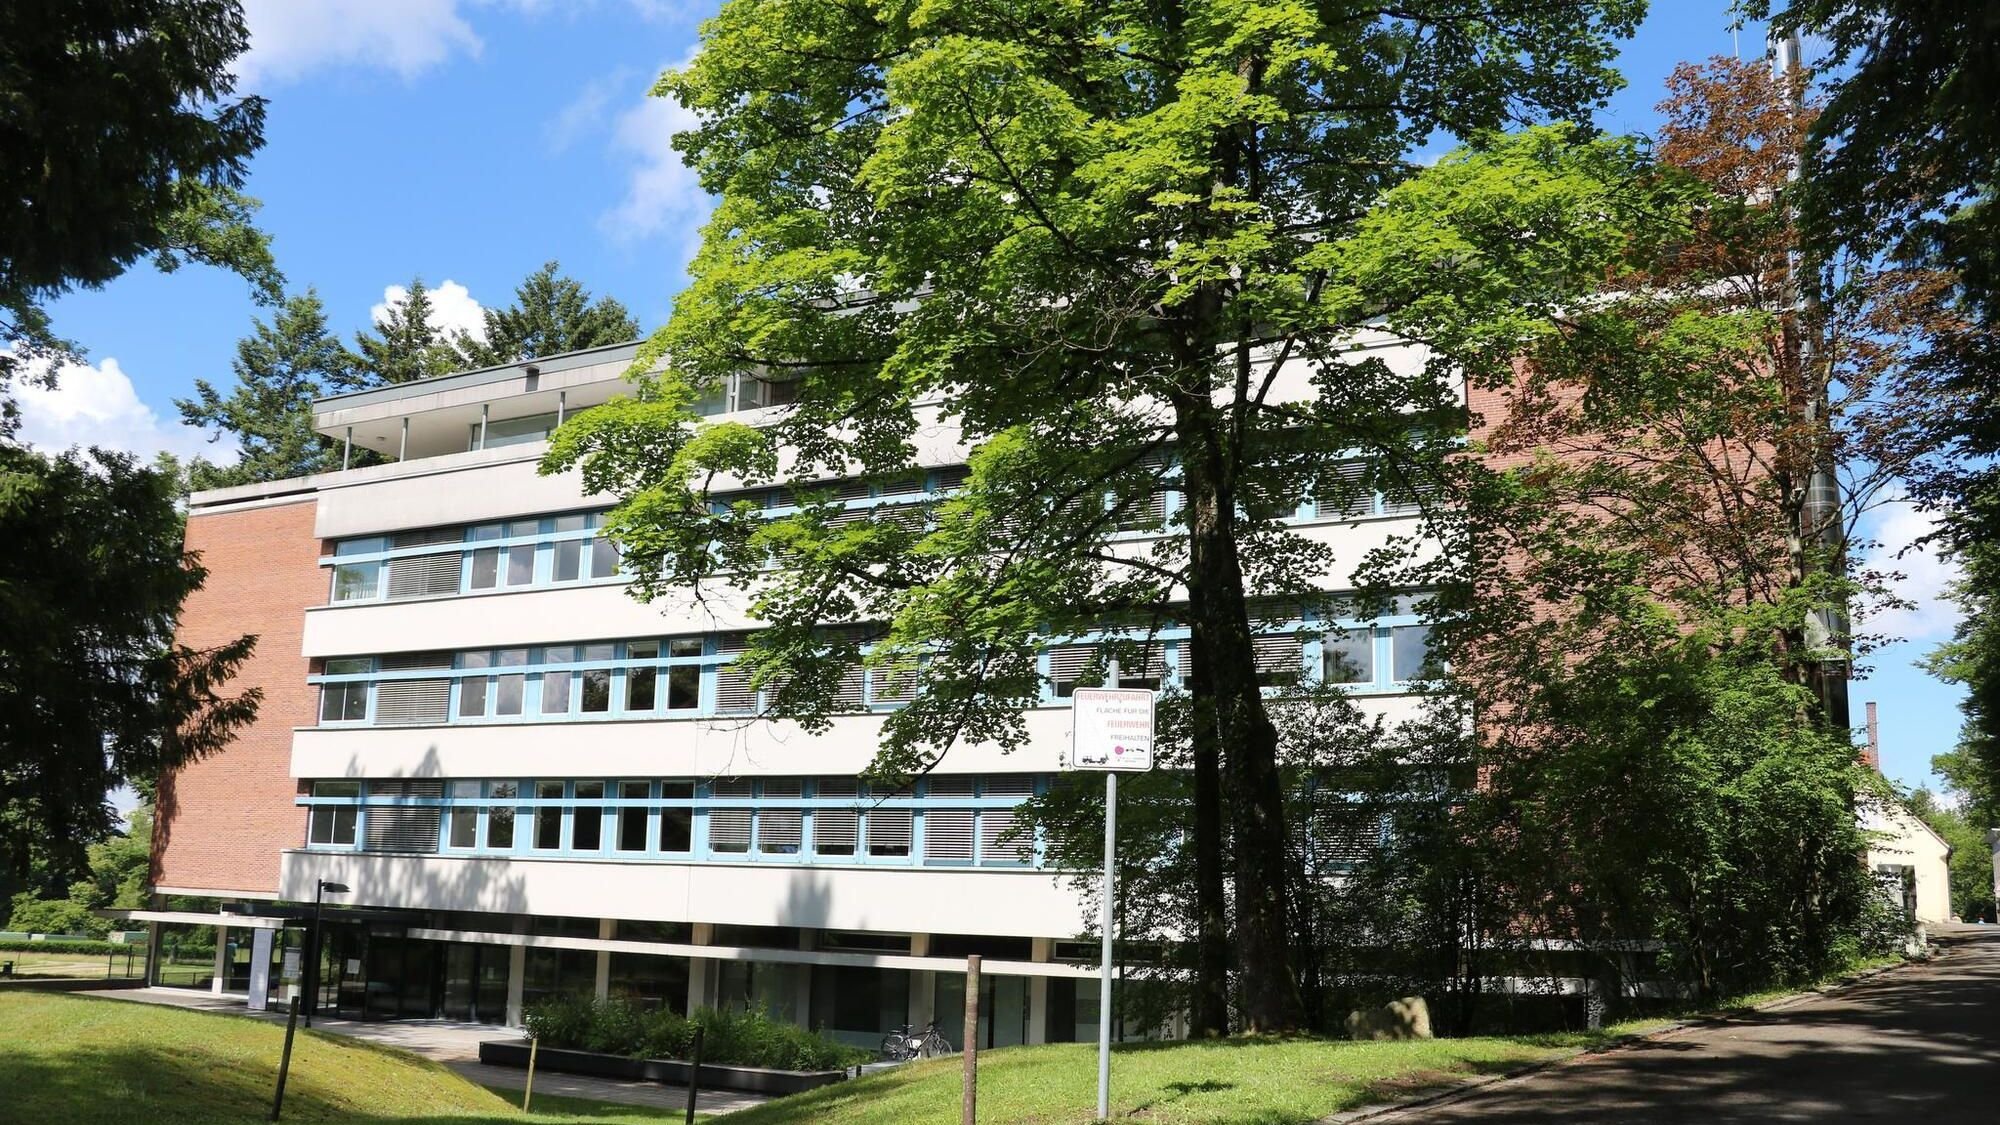 Waldseer Krankenhaus laut neustem Gerücht schon verkauft – das ist dran